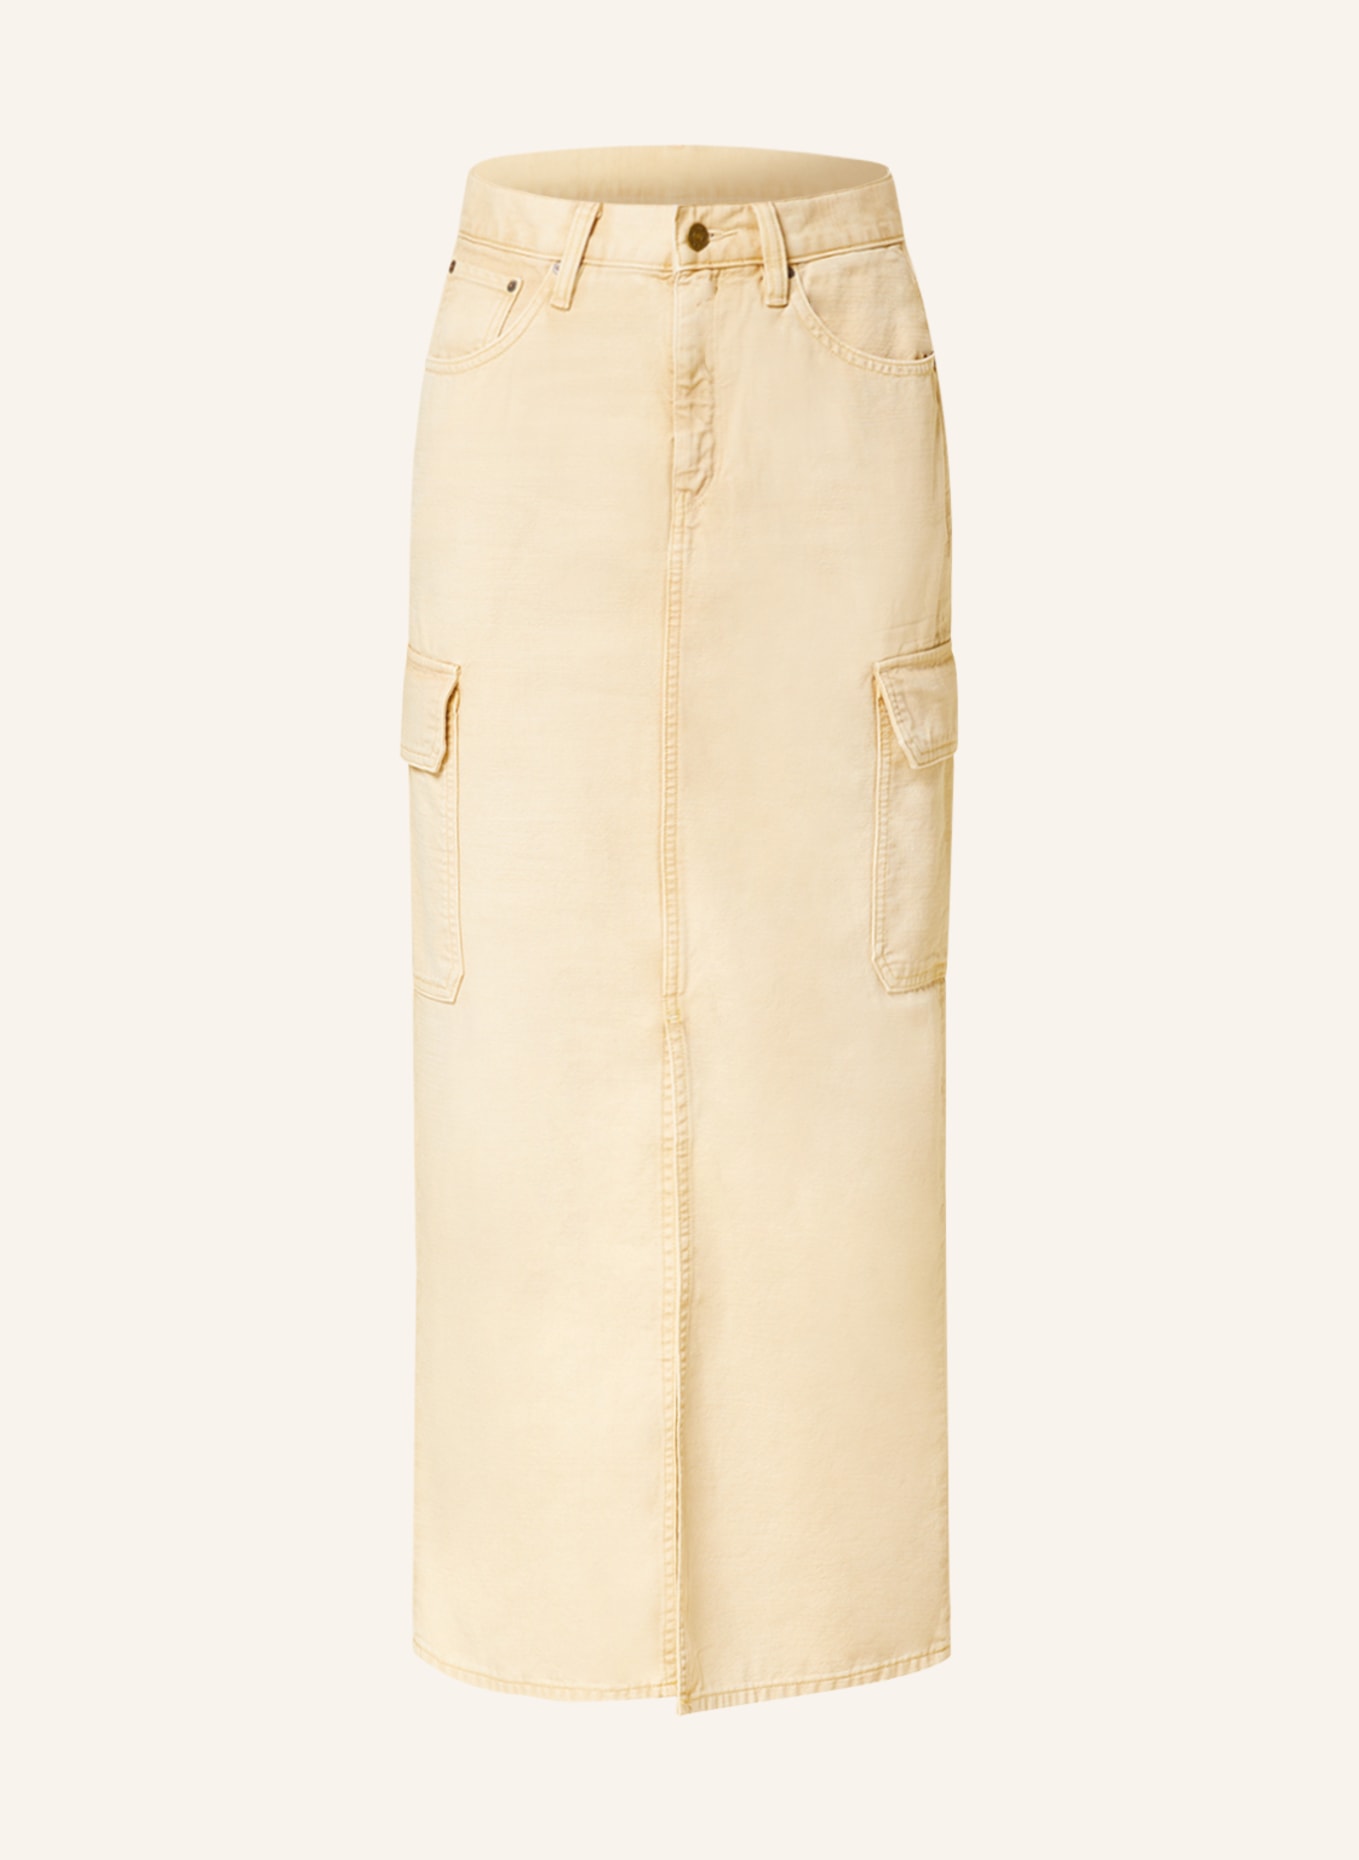 G-Star RAW Spódnica jeansowa VIKTORIA, Kolor: G553 sun faded sand gd (Obrazek 1)